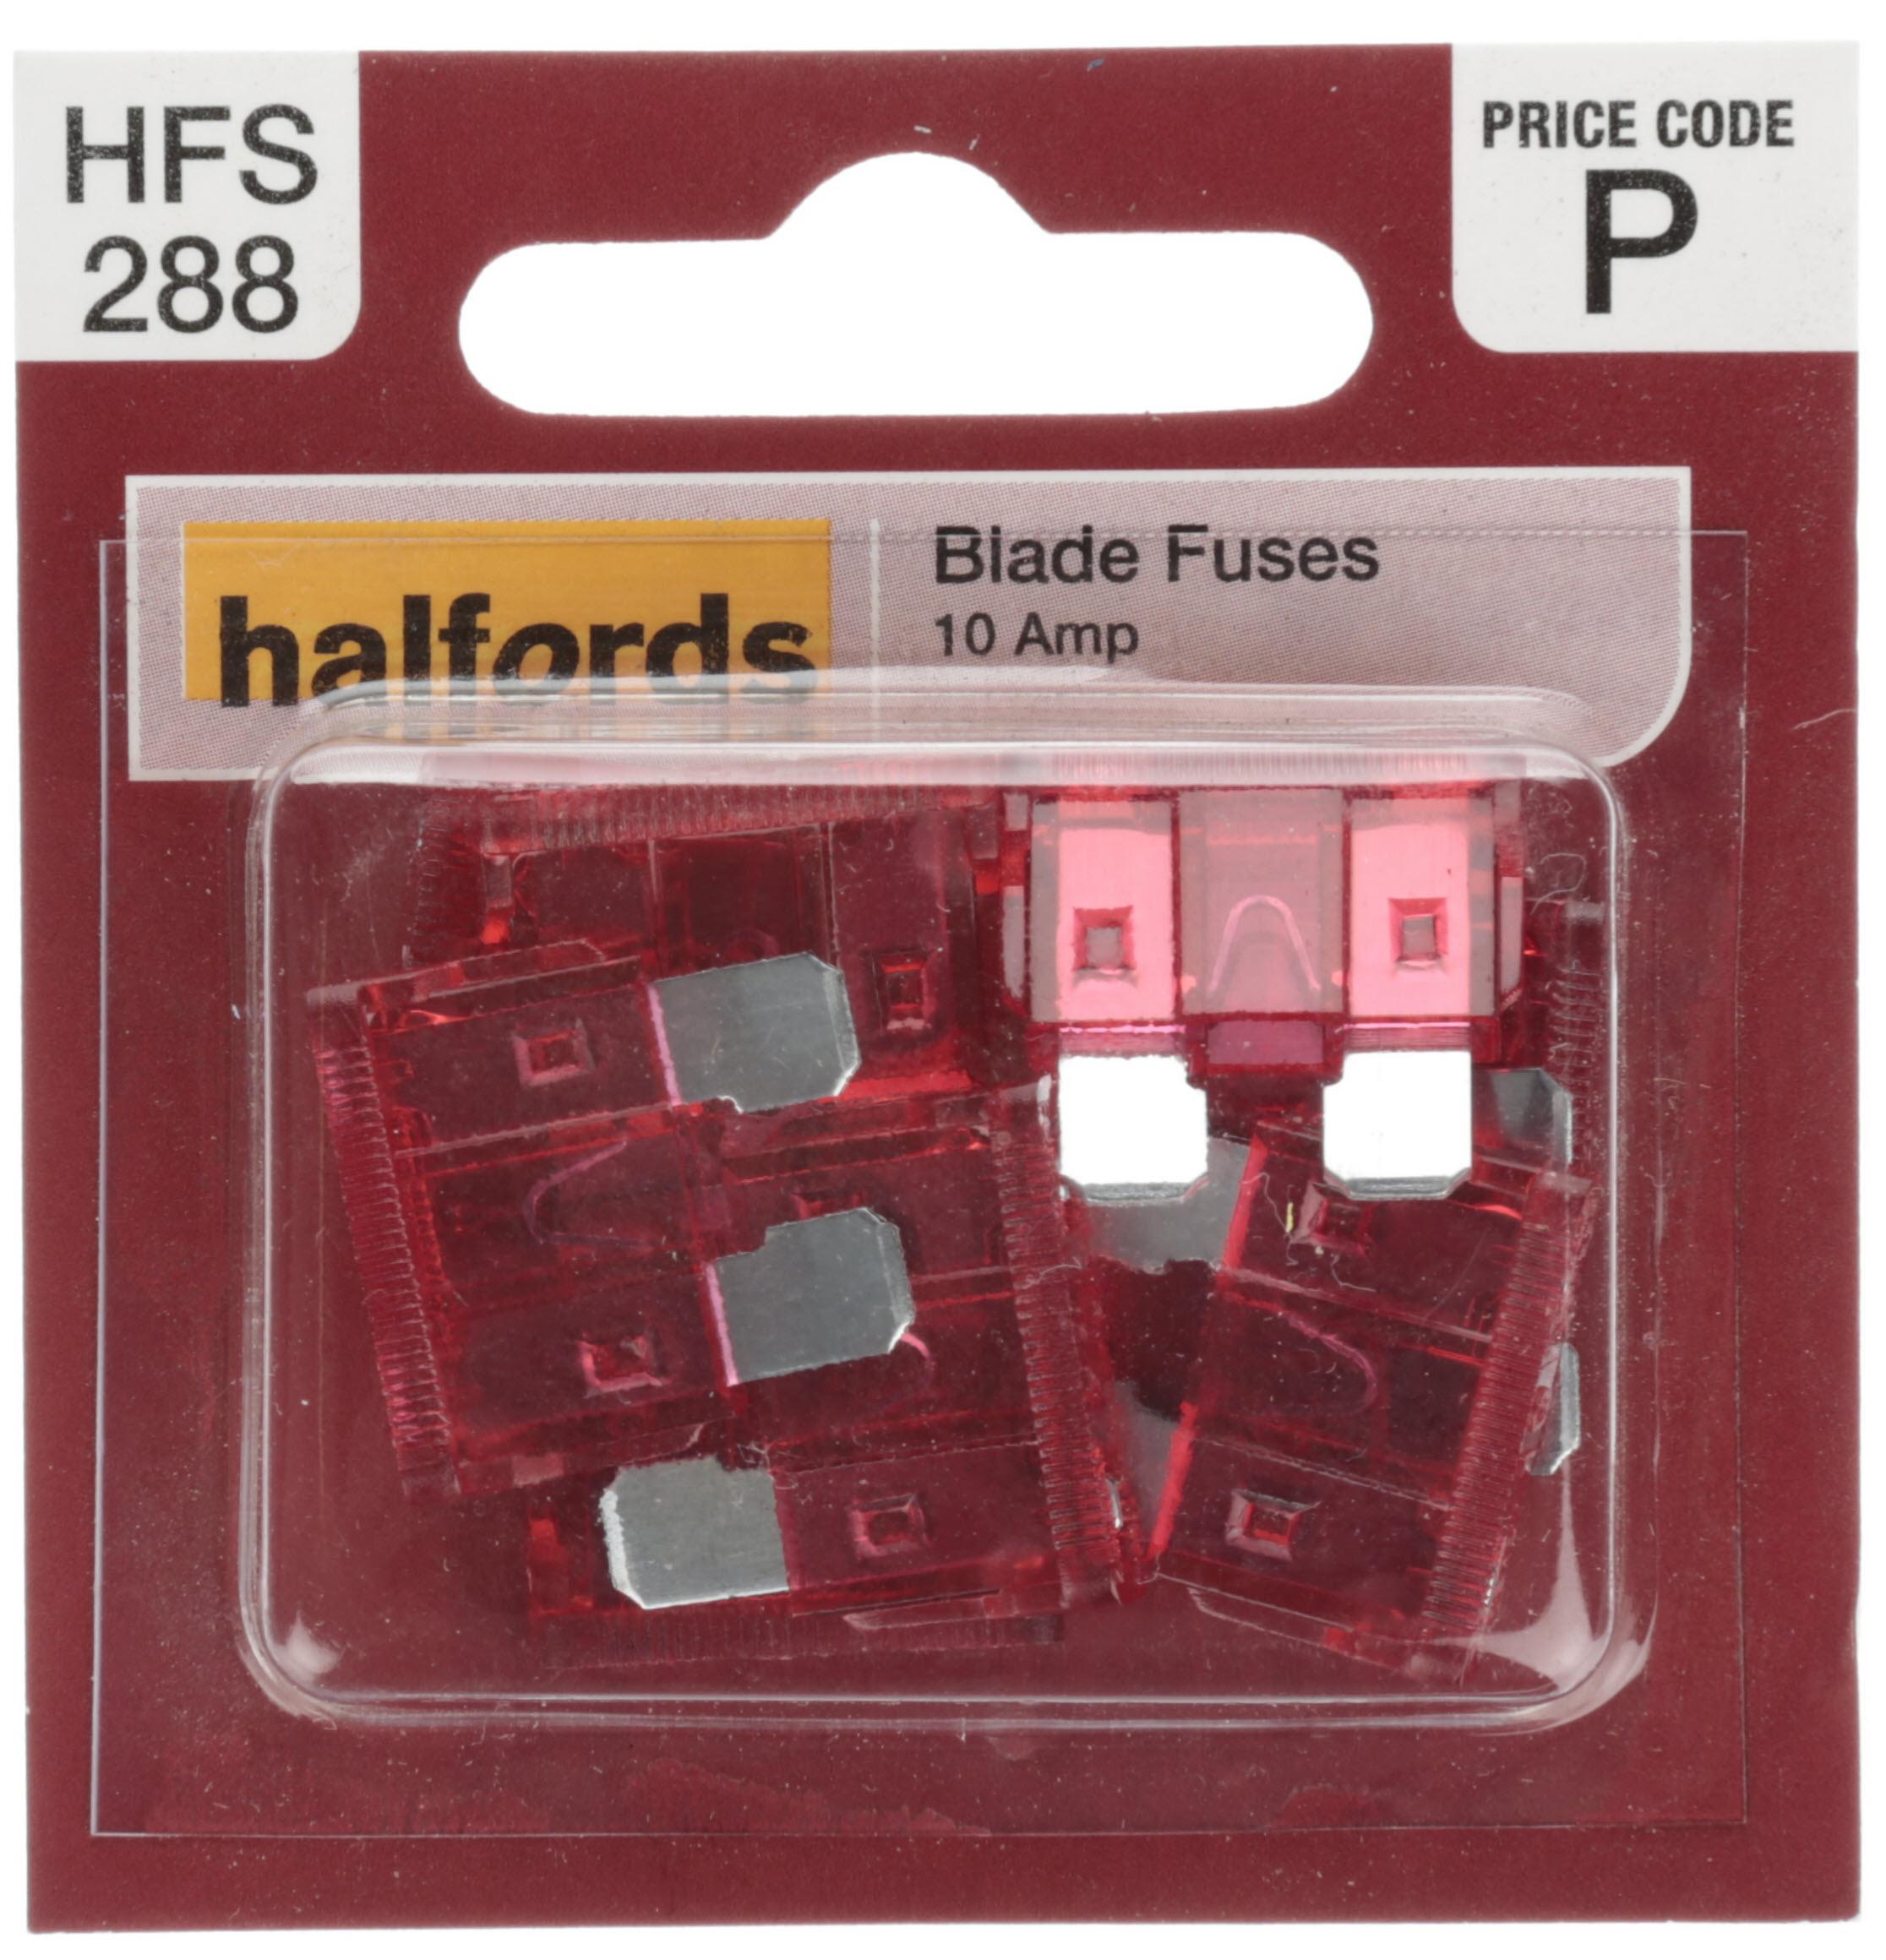 Halfords Blade Fuses 10 Amp (Hfs288)